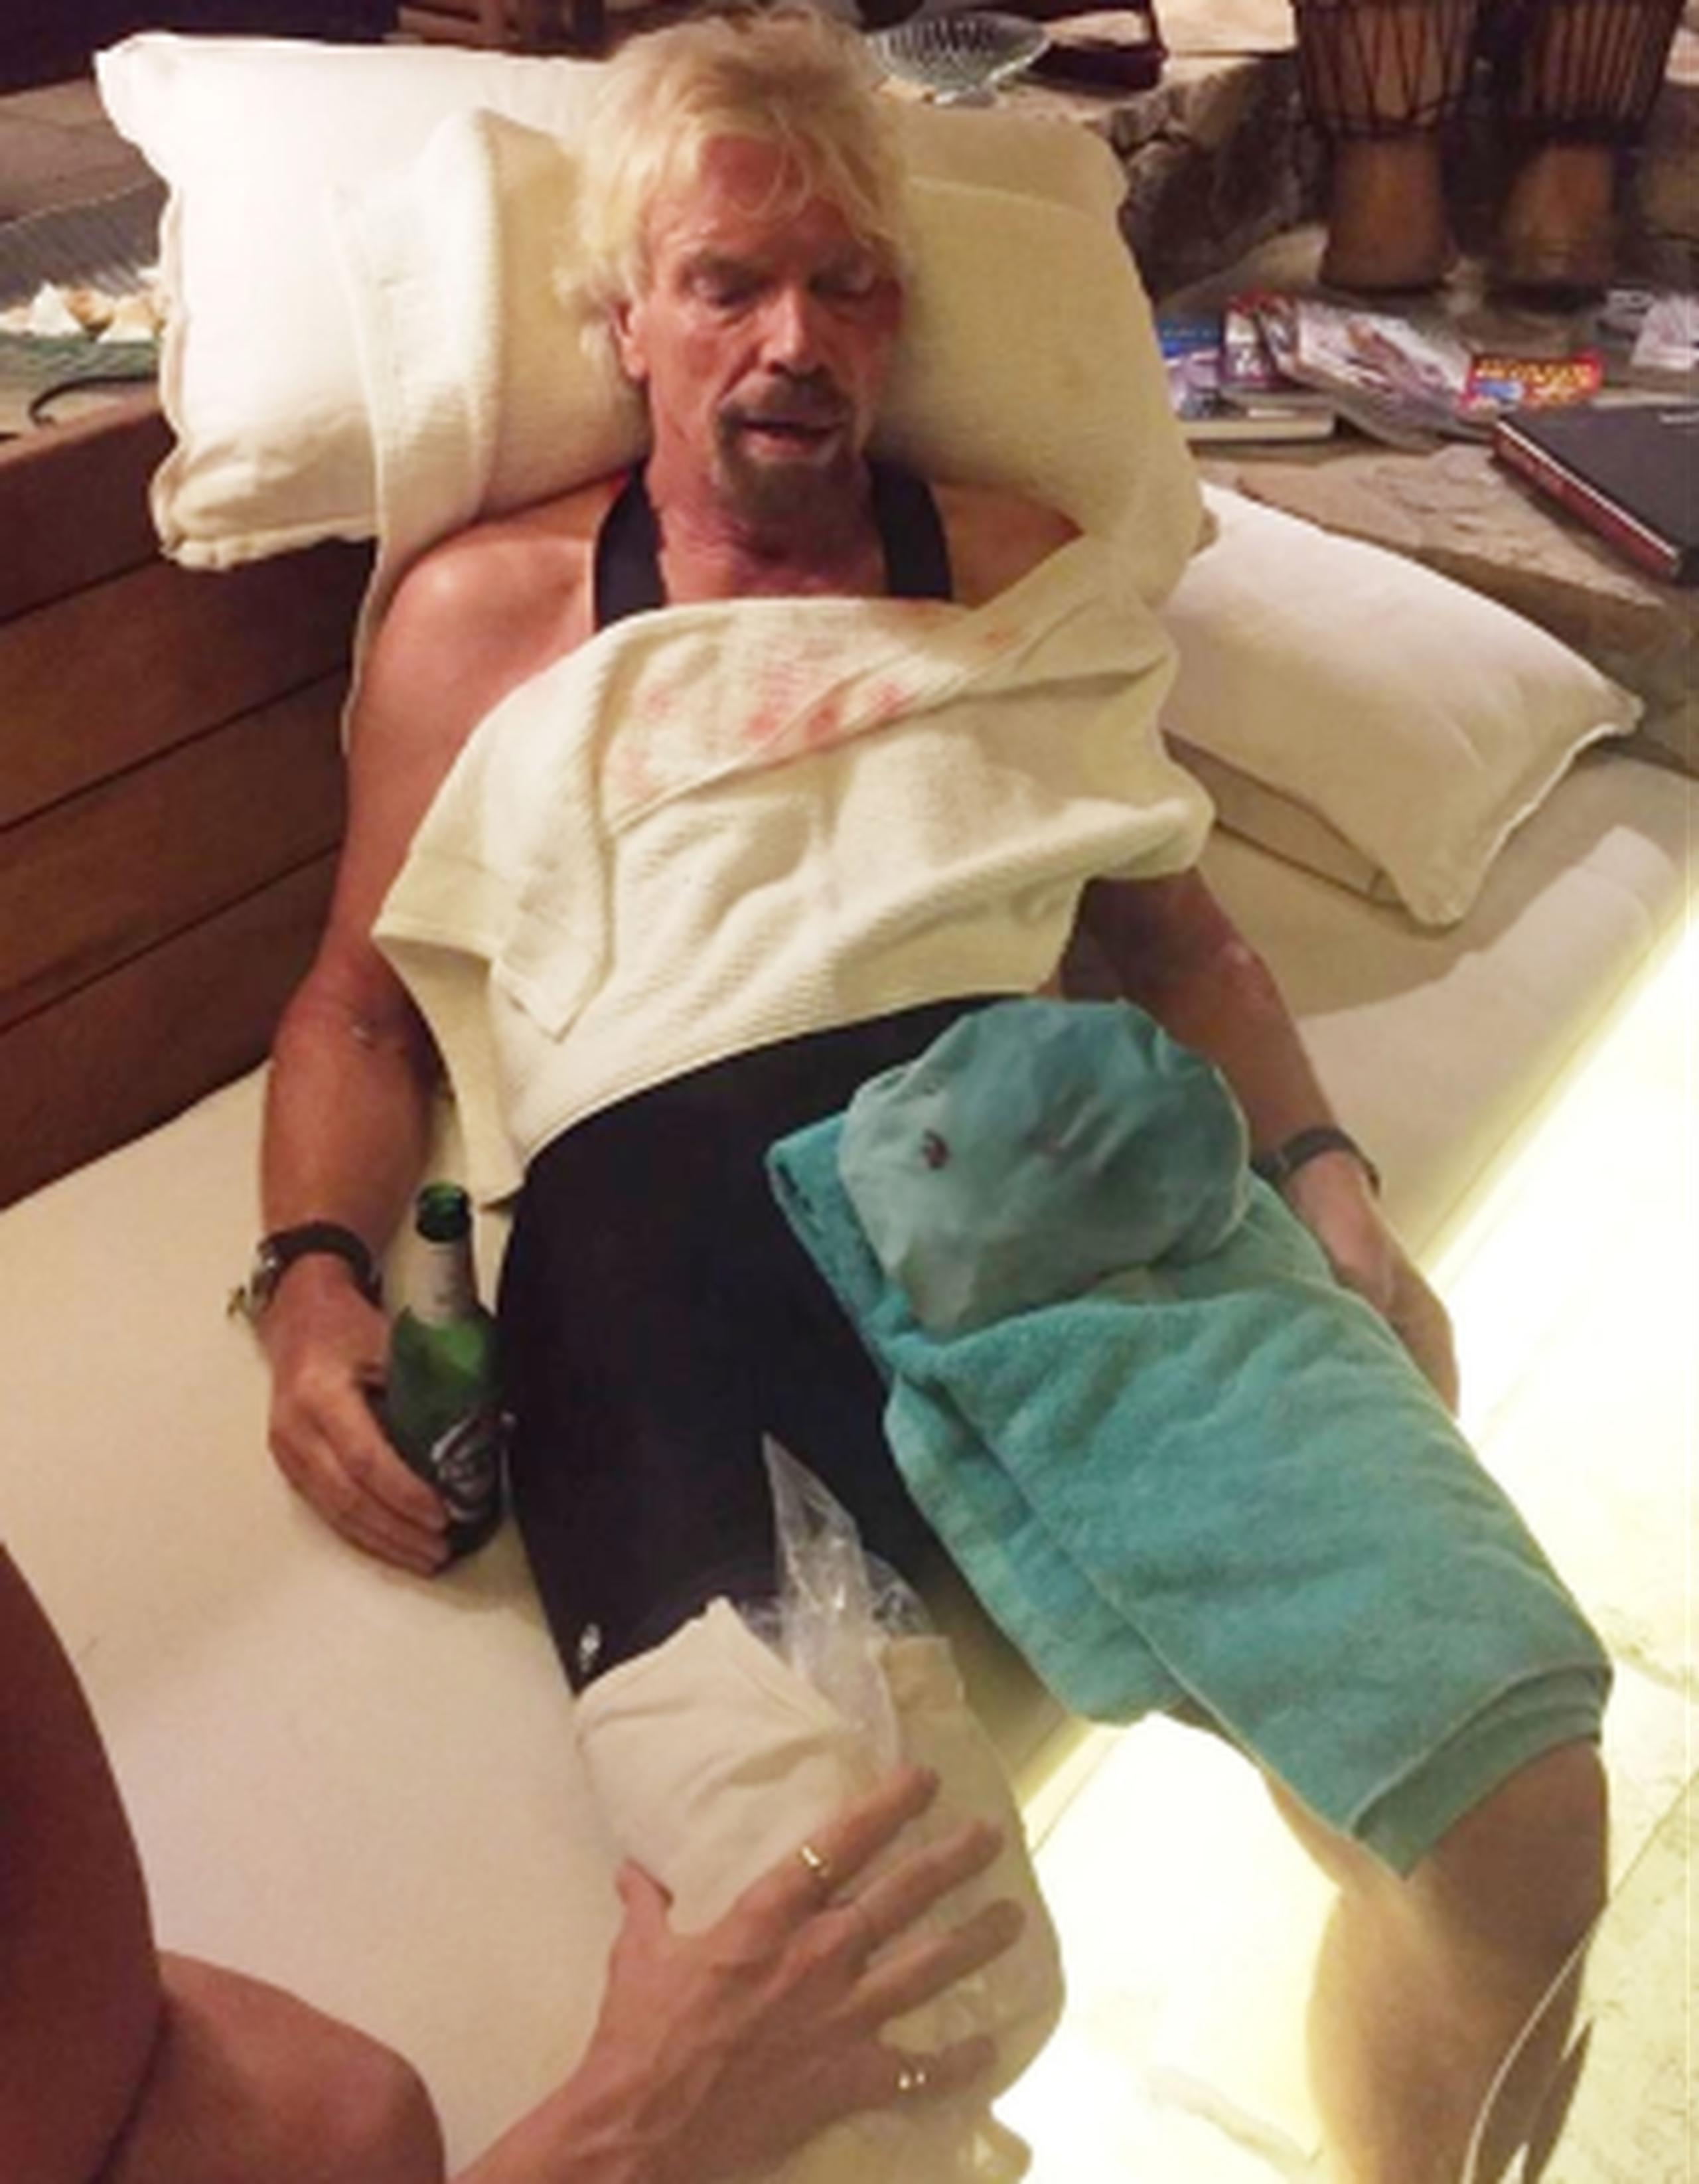 Branson es atendido por sus heridas. (Foto/Virgin.com)